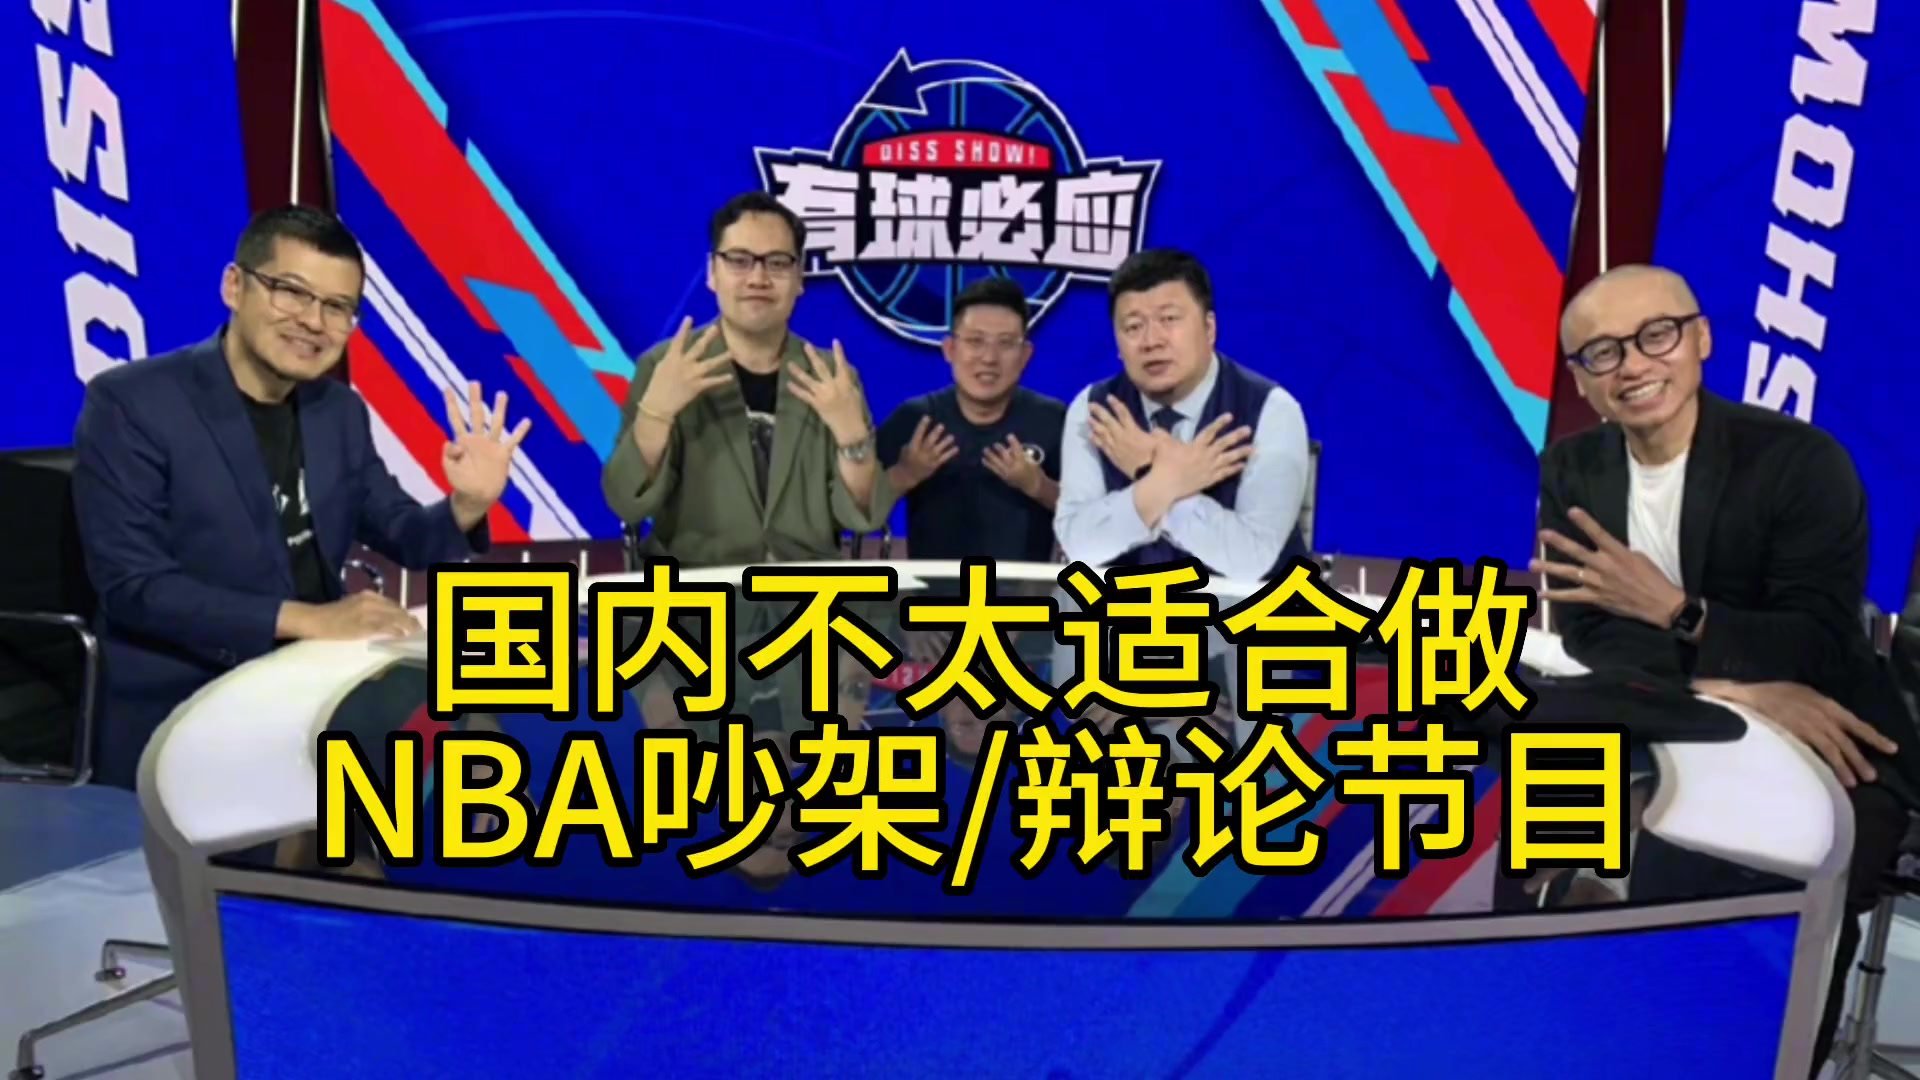 杨毅:在国内不太适合搞篮球吵架节目 因为国内球迷普遍开不起玩笑